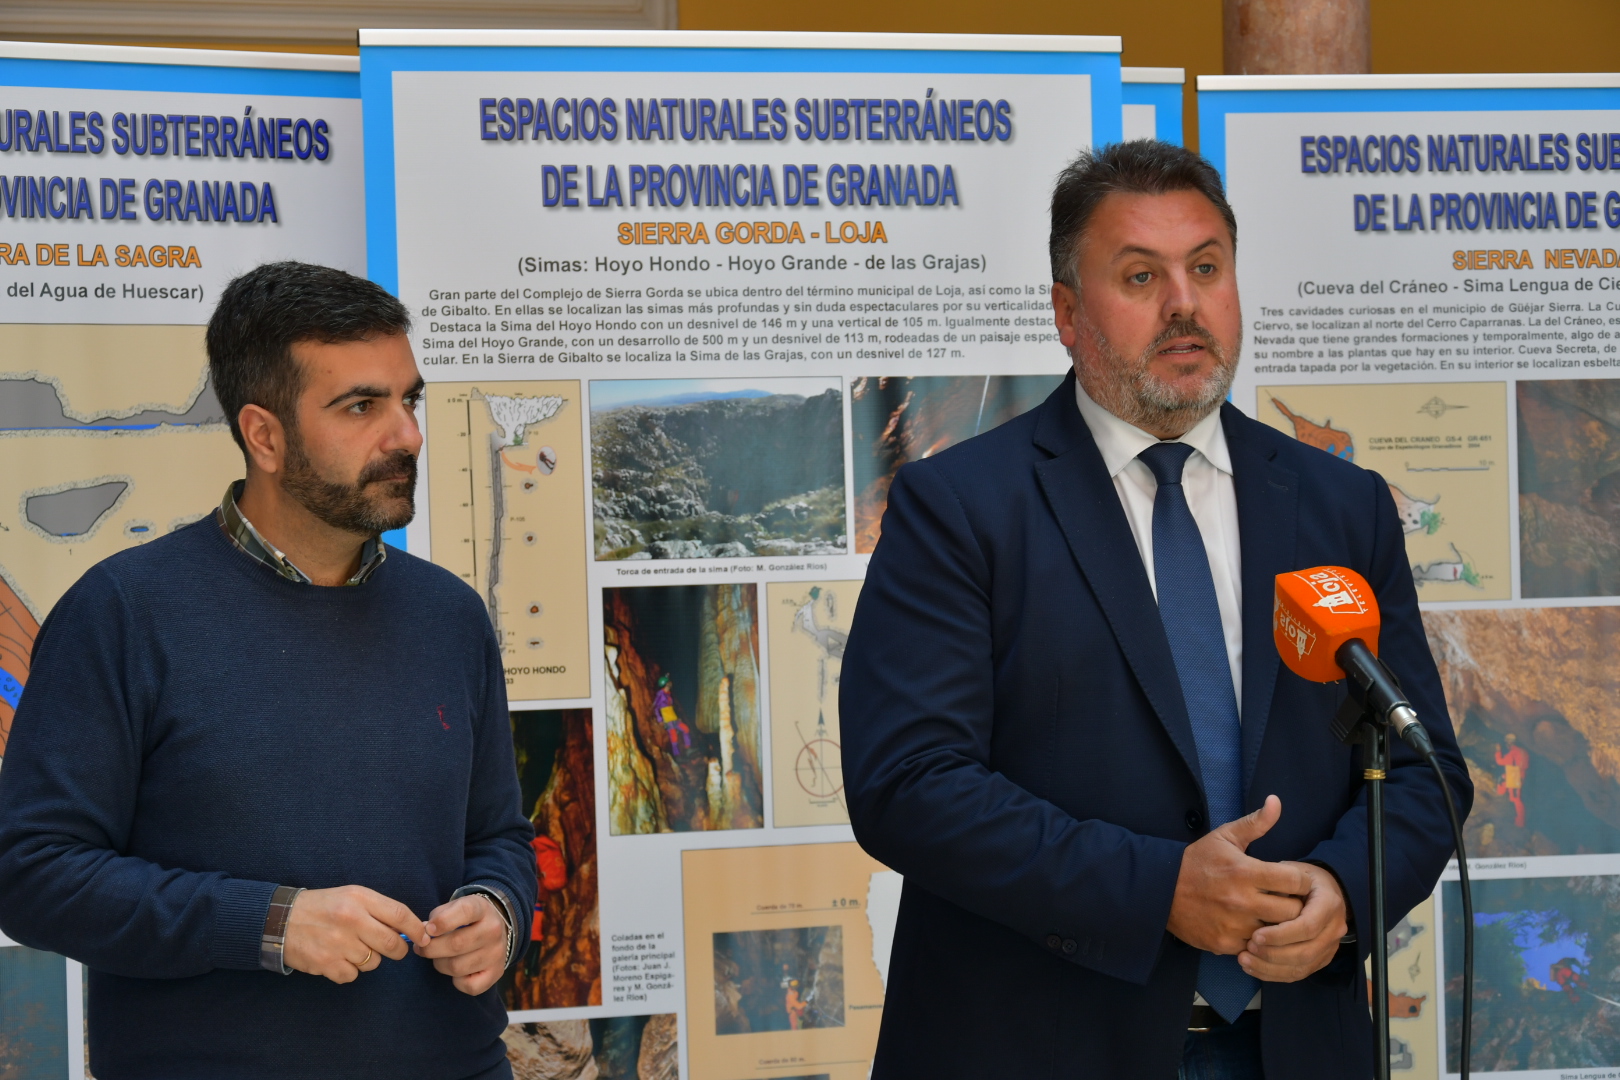 Clausuran en Loja la exposición “Espacios Naturales Subterráneos de la provincia de Granada”